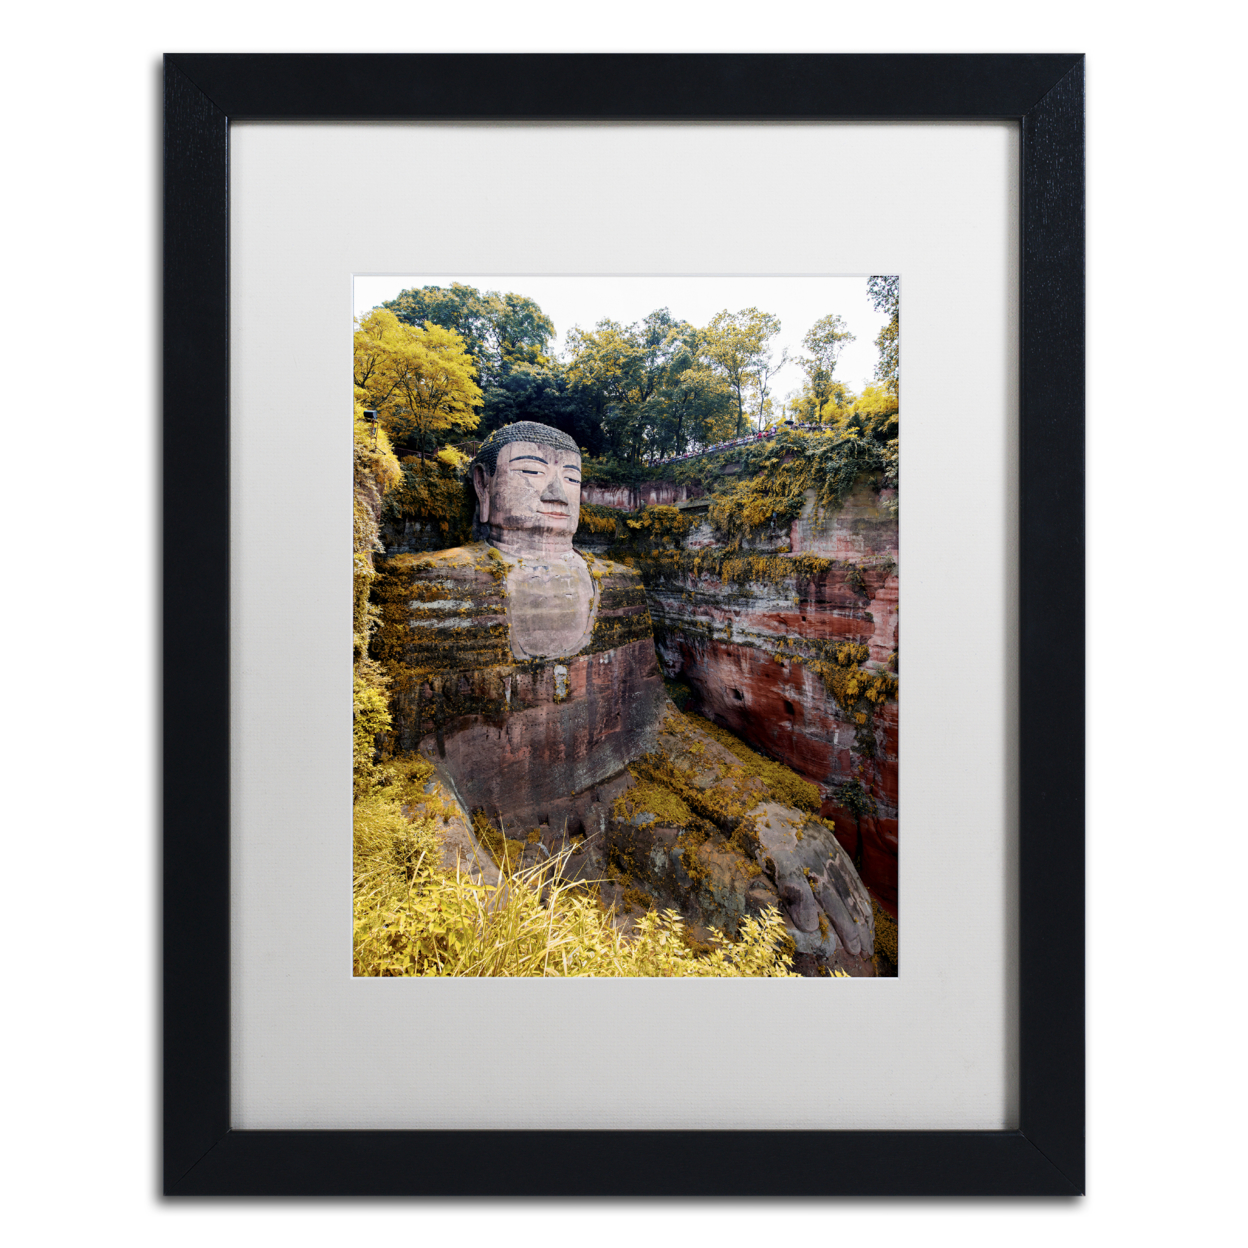 Philippe Hugonnard 'Giant Buddha II' Black Wooden Framed Art 18 X 22 Inches